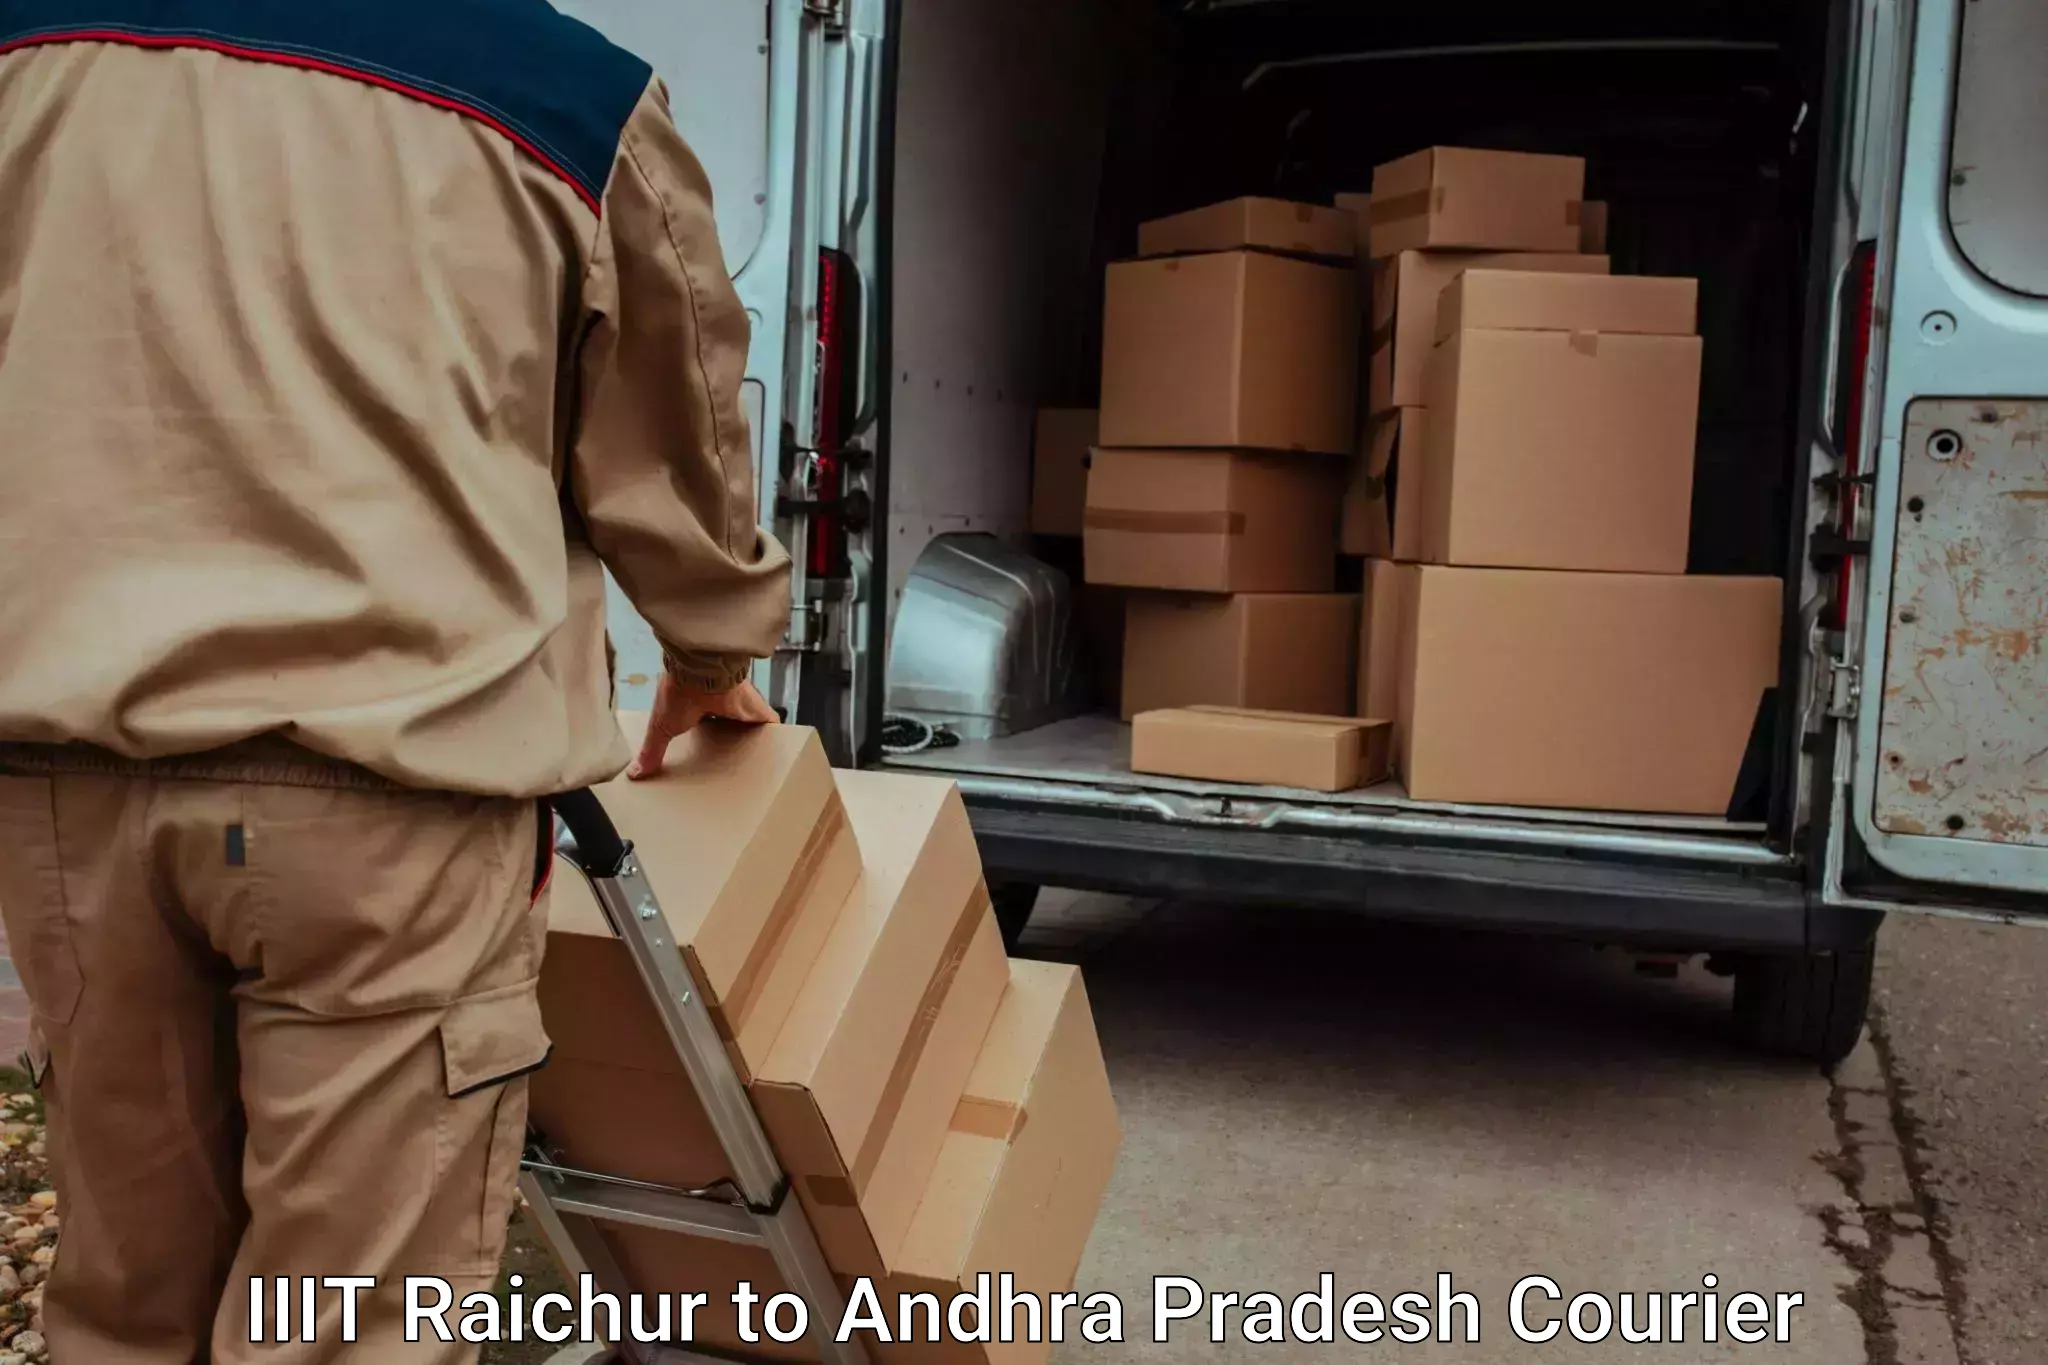 Luggage transport service IIIT Raichur to Kambadur